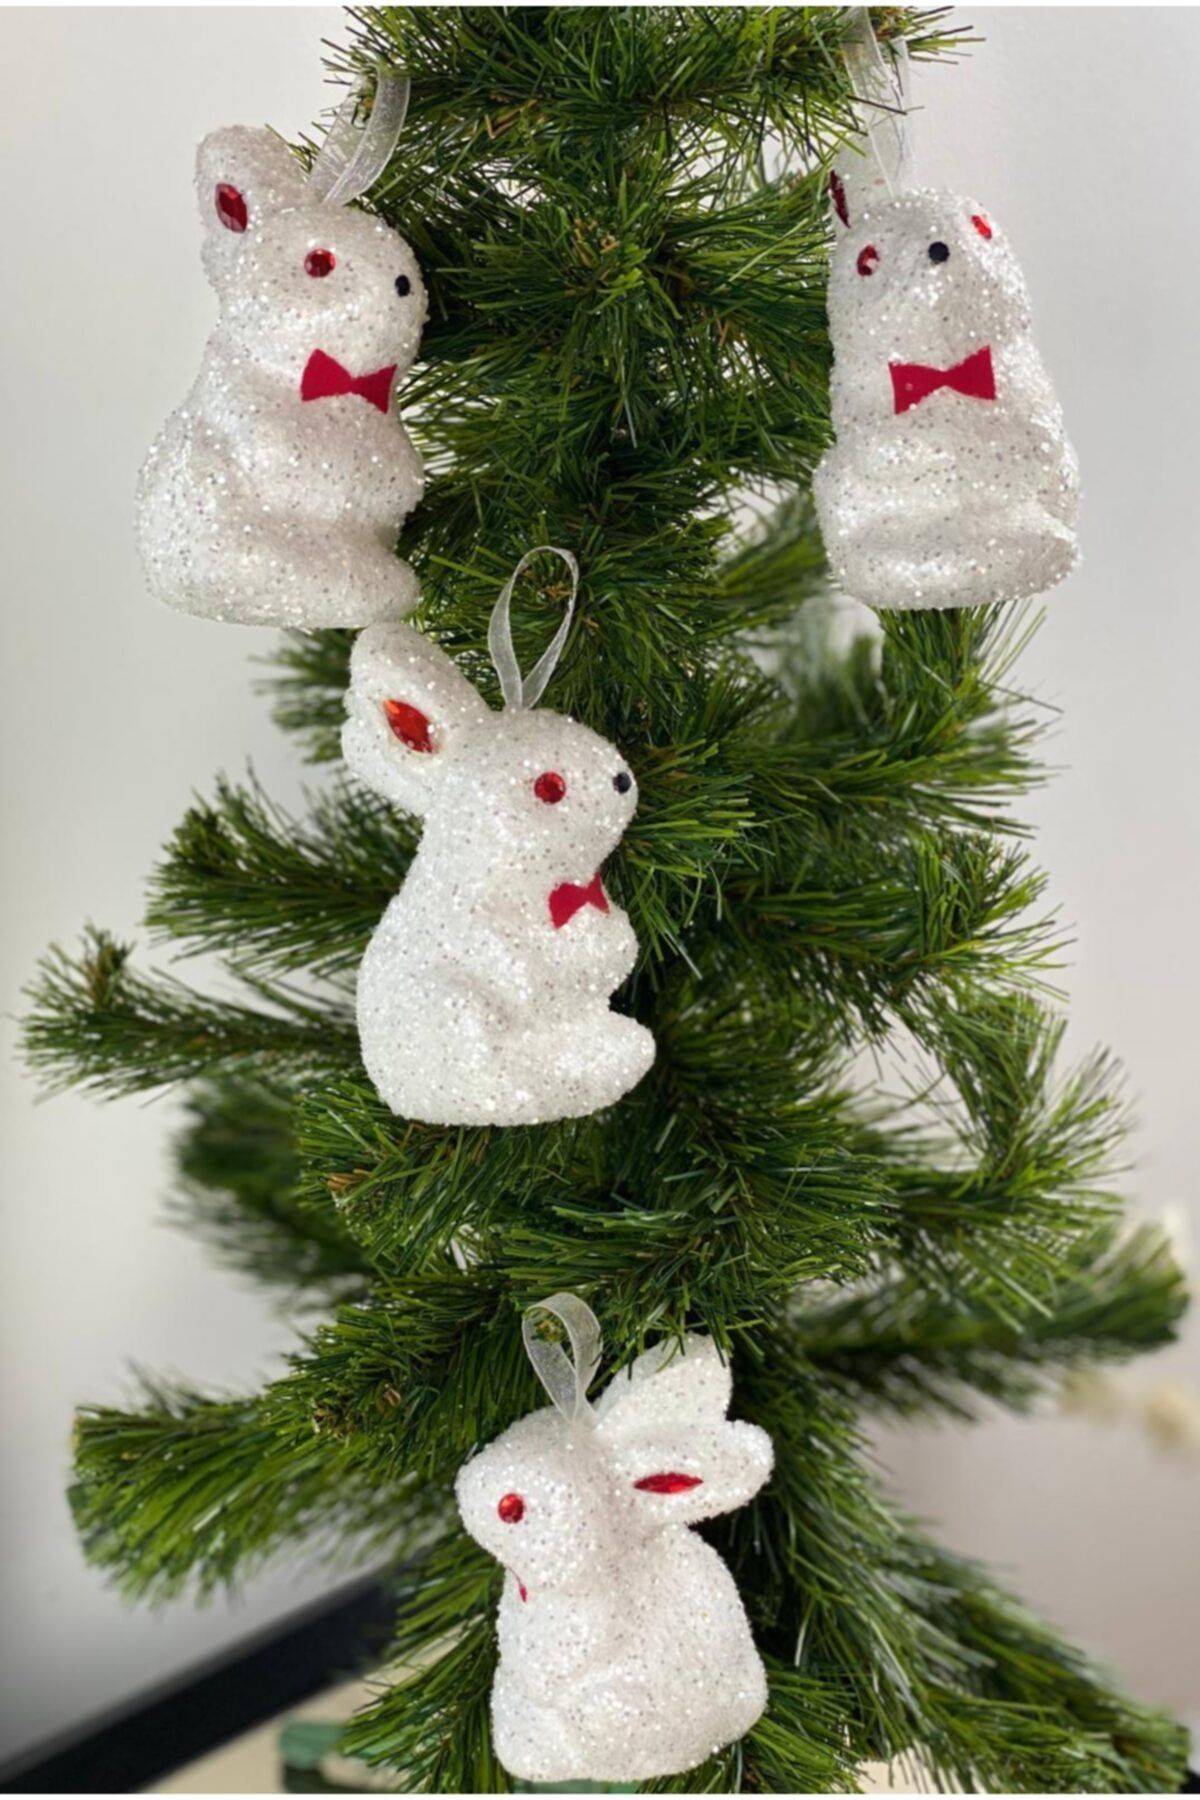 QUEEN AKSESUAR Yeni Yıl Yılbaşı Özel Sevimli Karlı Simli Taşlı Tavşan Yılbaşı Ağacı Süsü 2 li Set